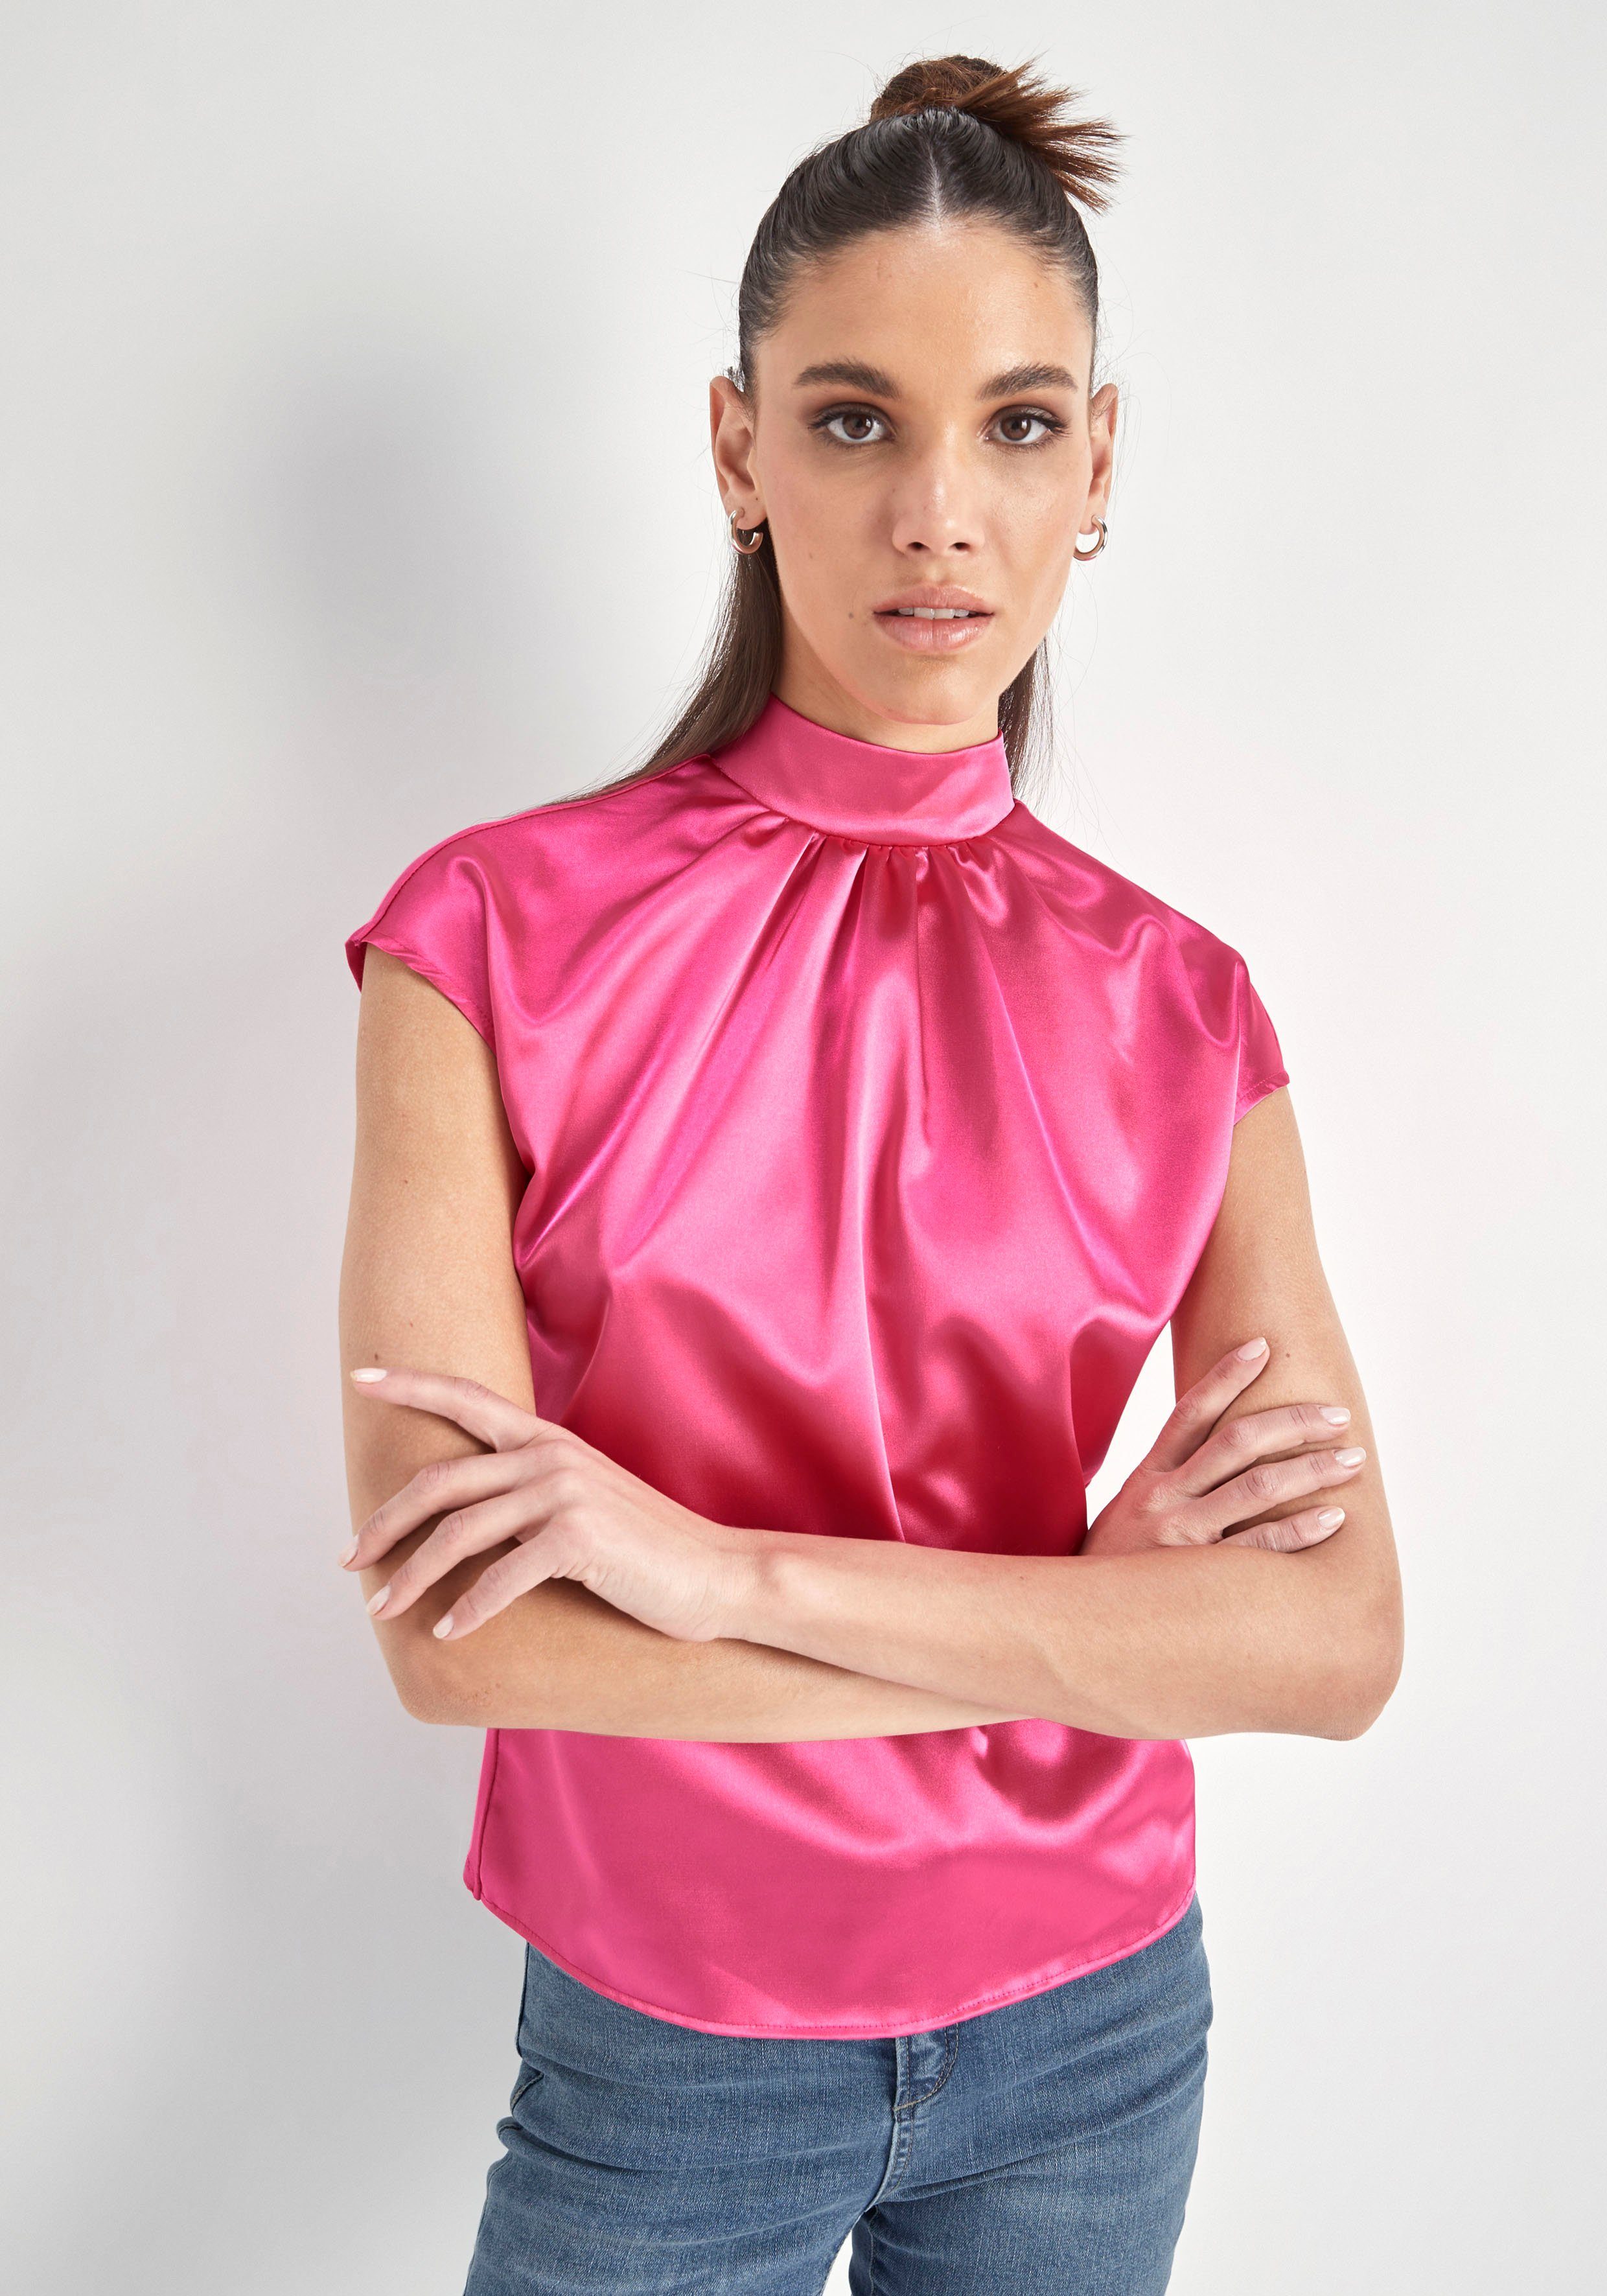 HECHTER Blusentop Material PARIS hochwertigem pink aus